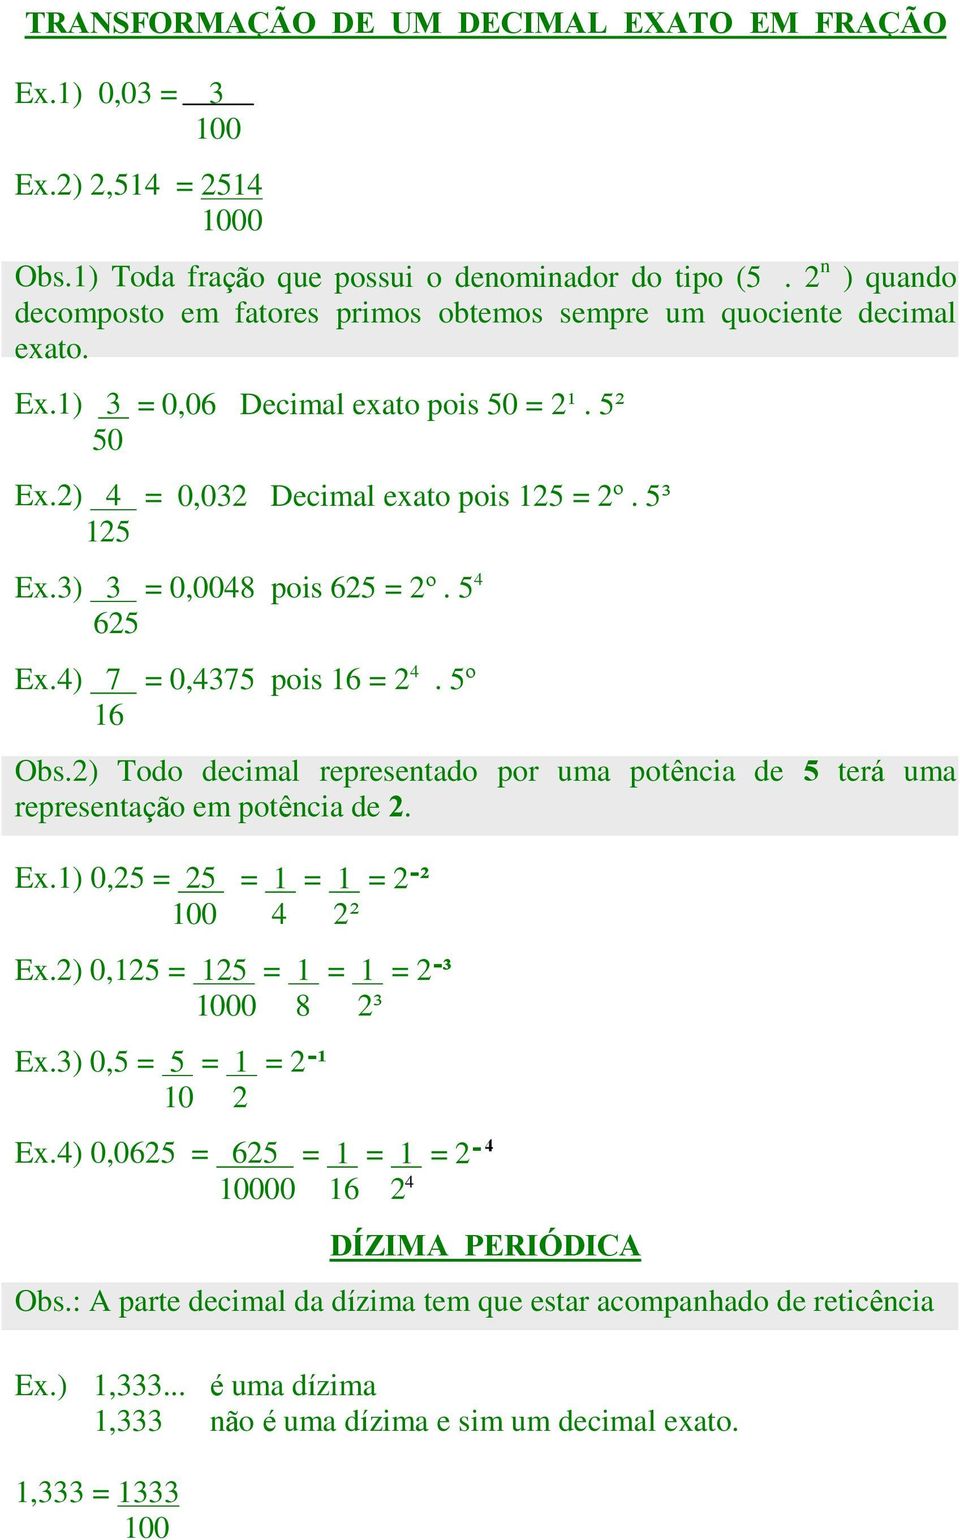 3) 3 = 0,0048 pois 625 = 2º. 5 4 625 Ex.4) 7 = 0,4375 pois 16 = 2 4. 5º 16 Obs.2) Todo decimal representado por uma potência de 5 terá uma representação em potência de 2. Ex.1) 0,25 = 25 = 1 = 1 = 2Î² 100 4 2² Ex.